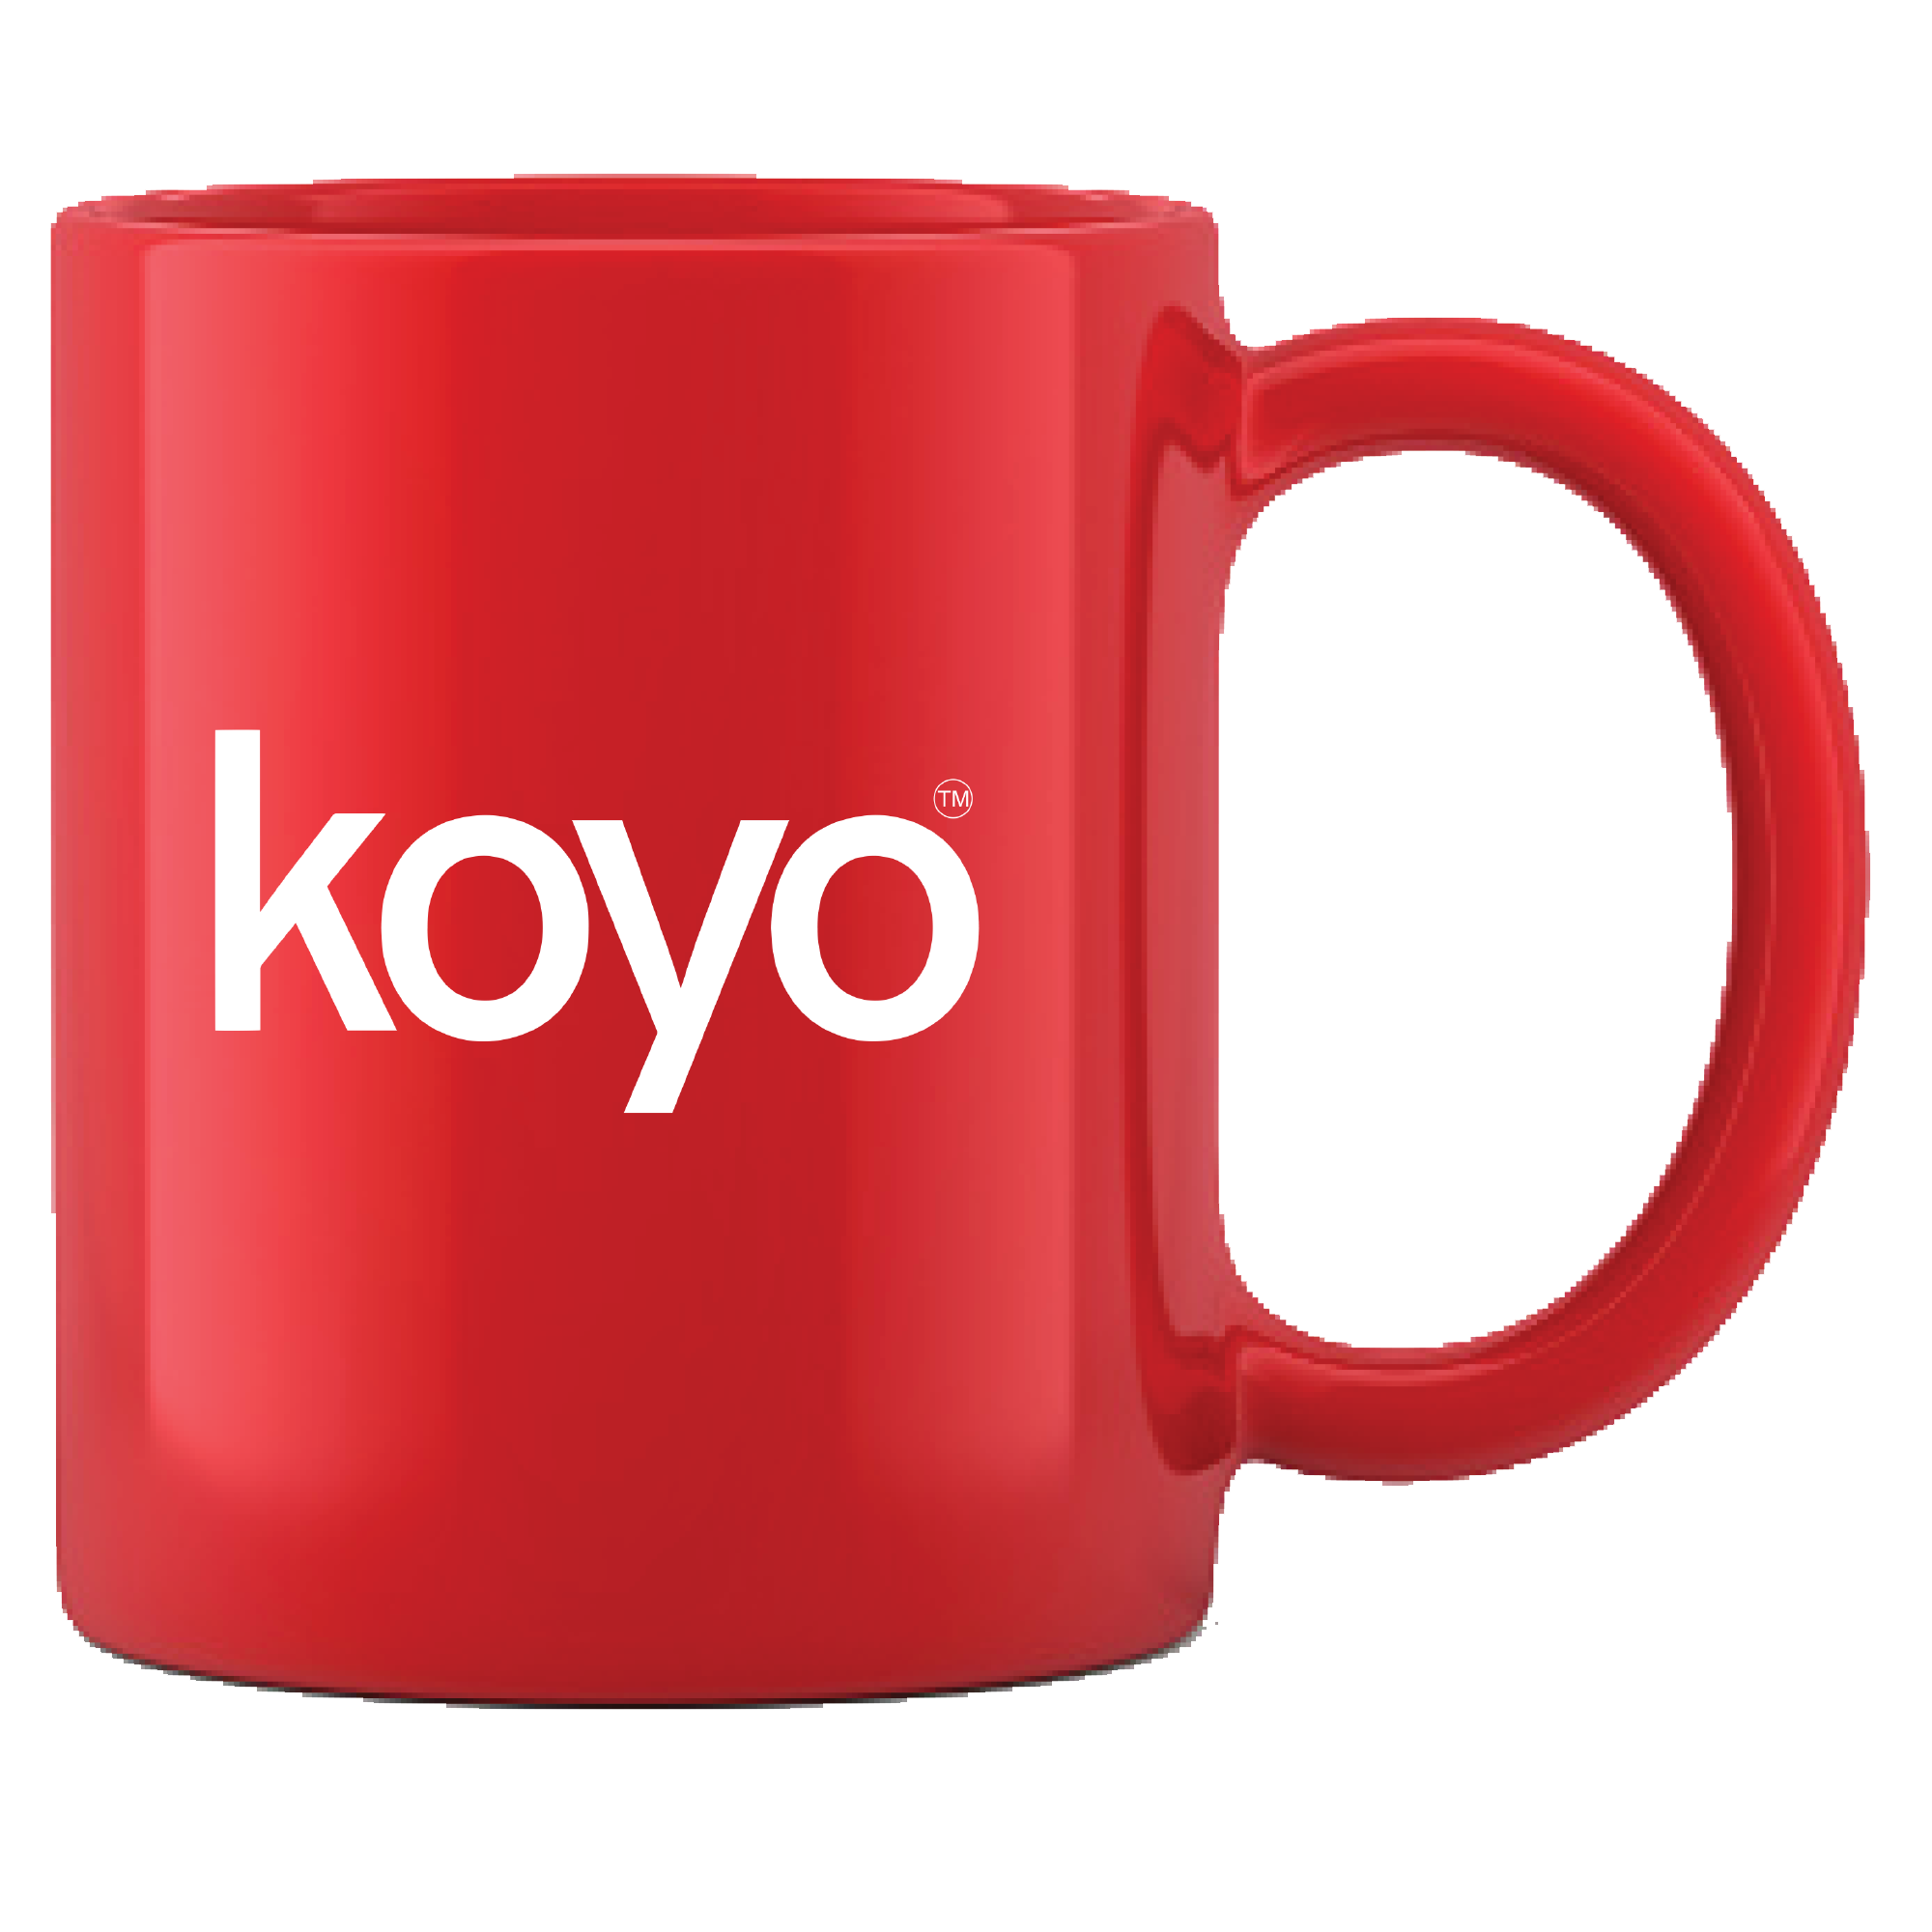 Koyo - Coffee Mug